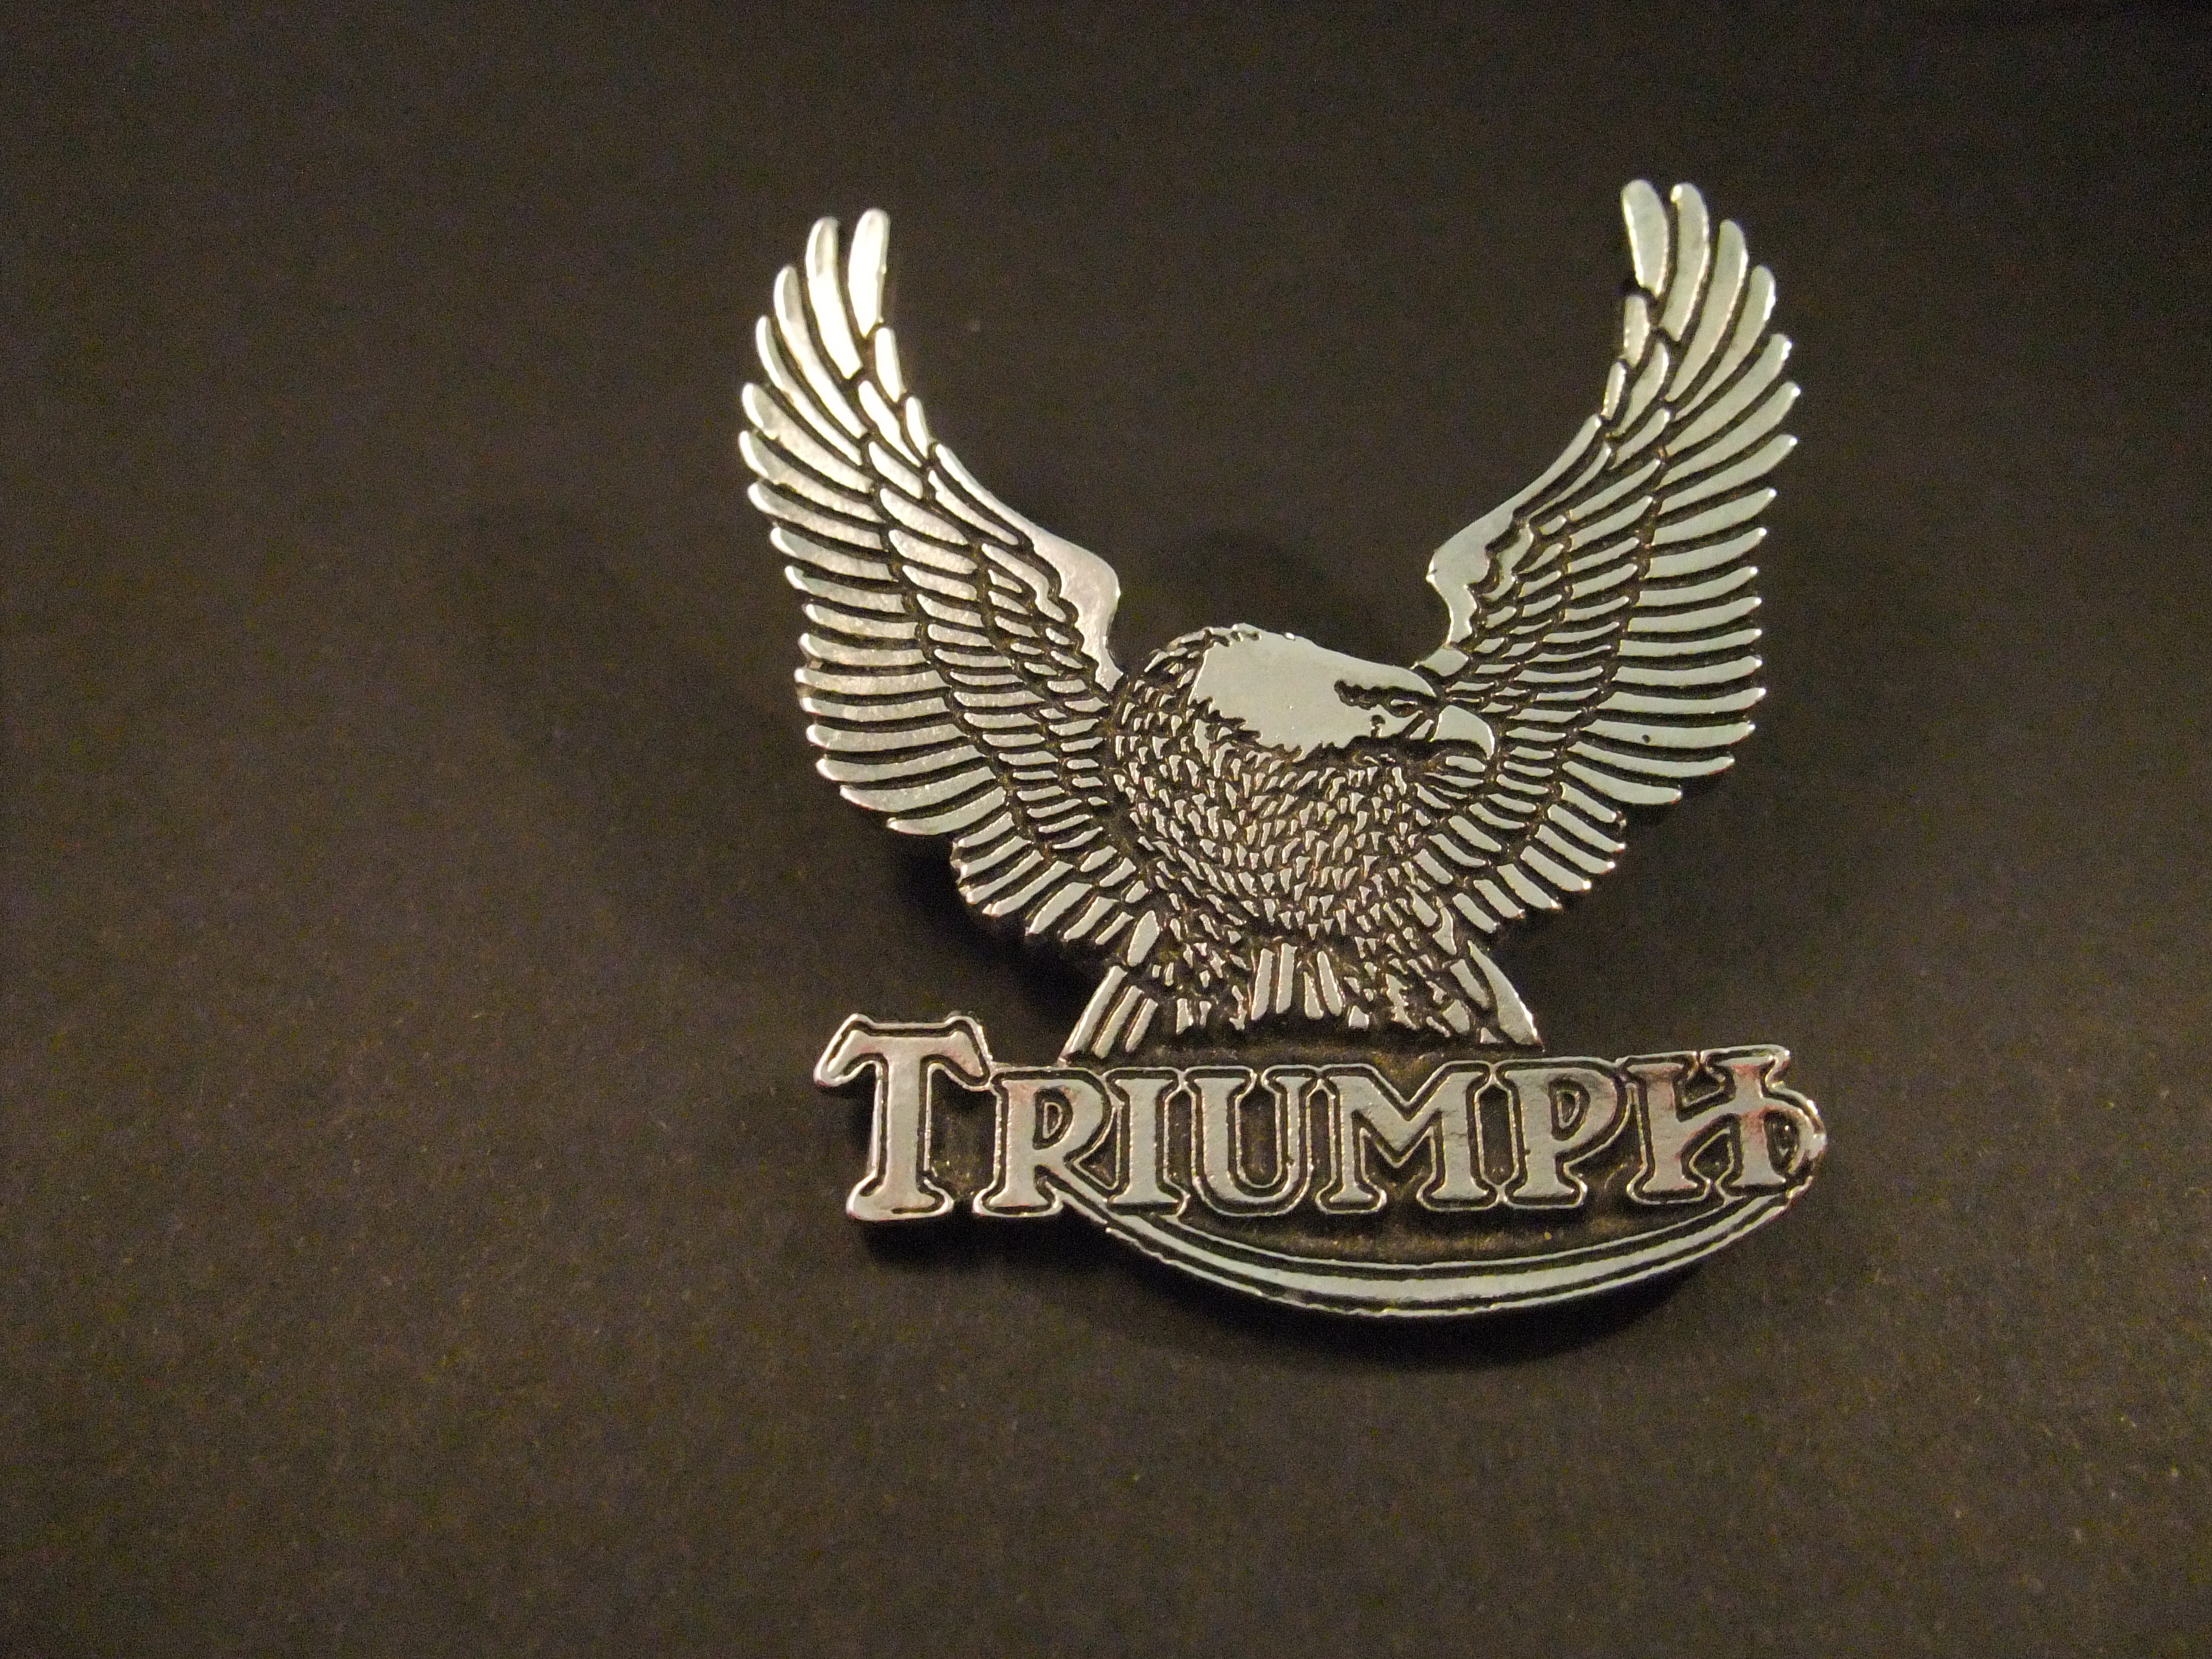 Triumph Brits merk van motorfietsen Wing logo Arend